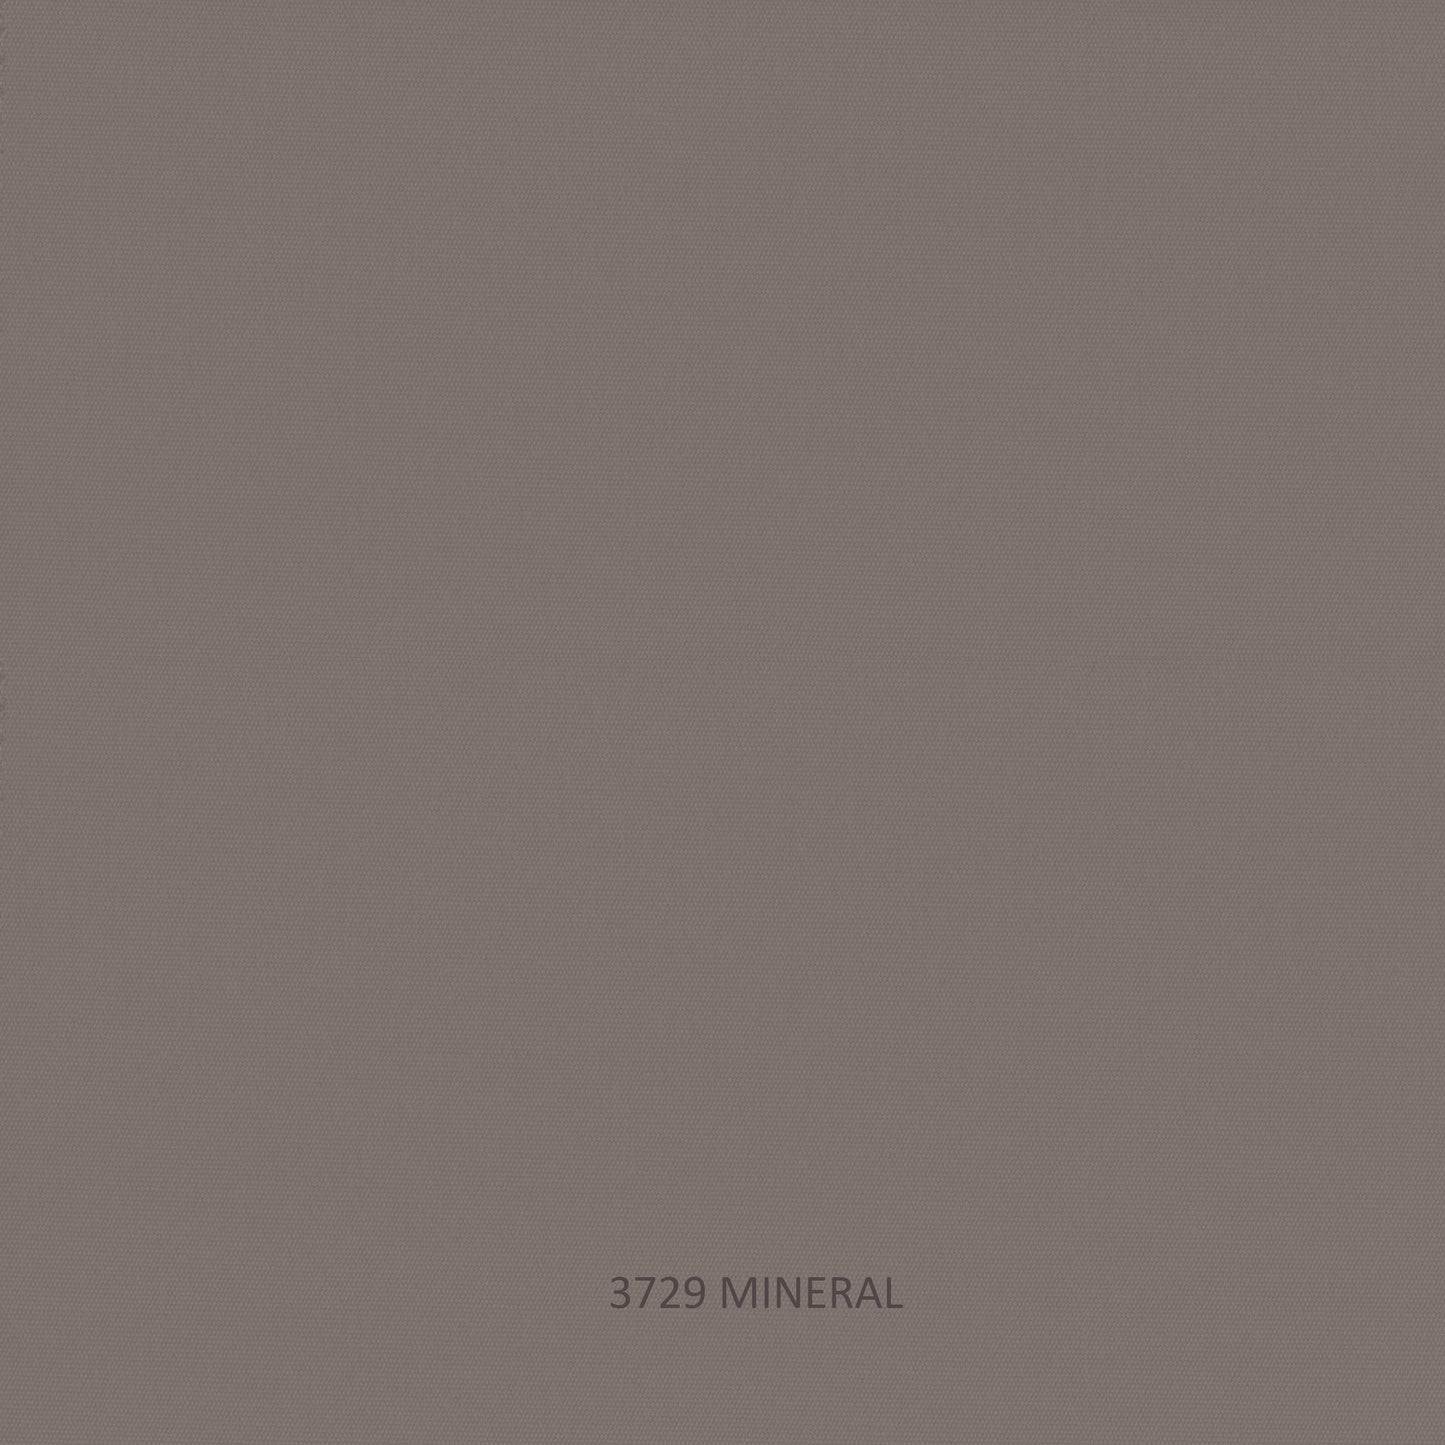 Milano Sofa - PadioLiving - Milano Sofa - Outdoor Sofa - Dark Grey 21mm Strap - Mineral (£2398) - PadioLiving